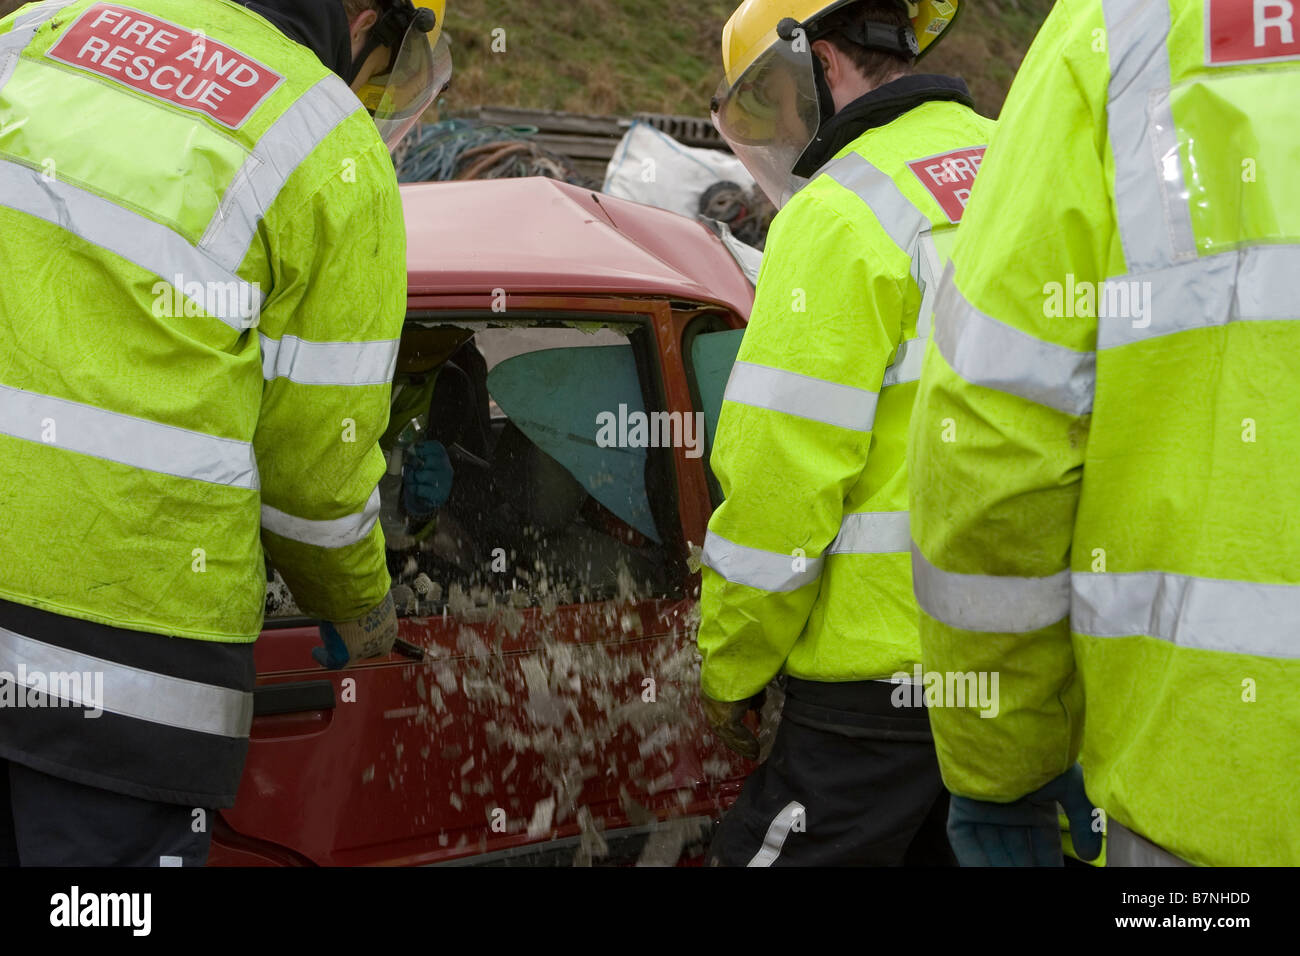 Les pompiers sur la formation de l'exercice dans une simulation d'accident de voiture Banque D'Images